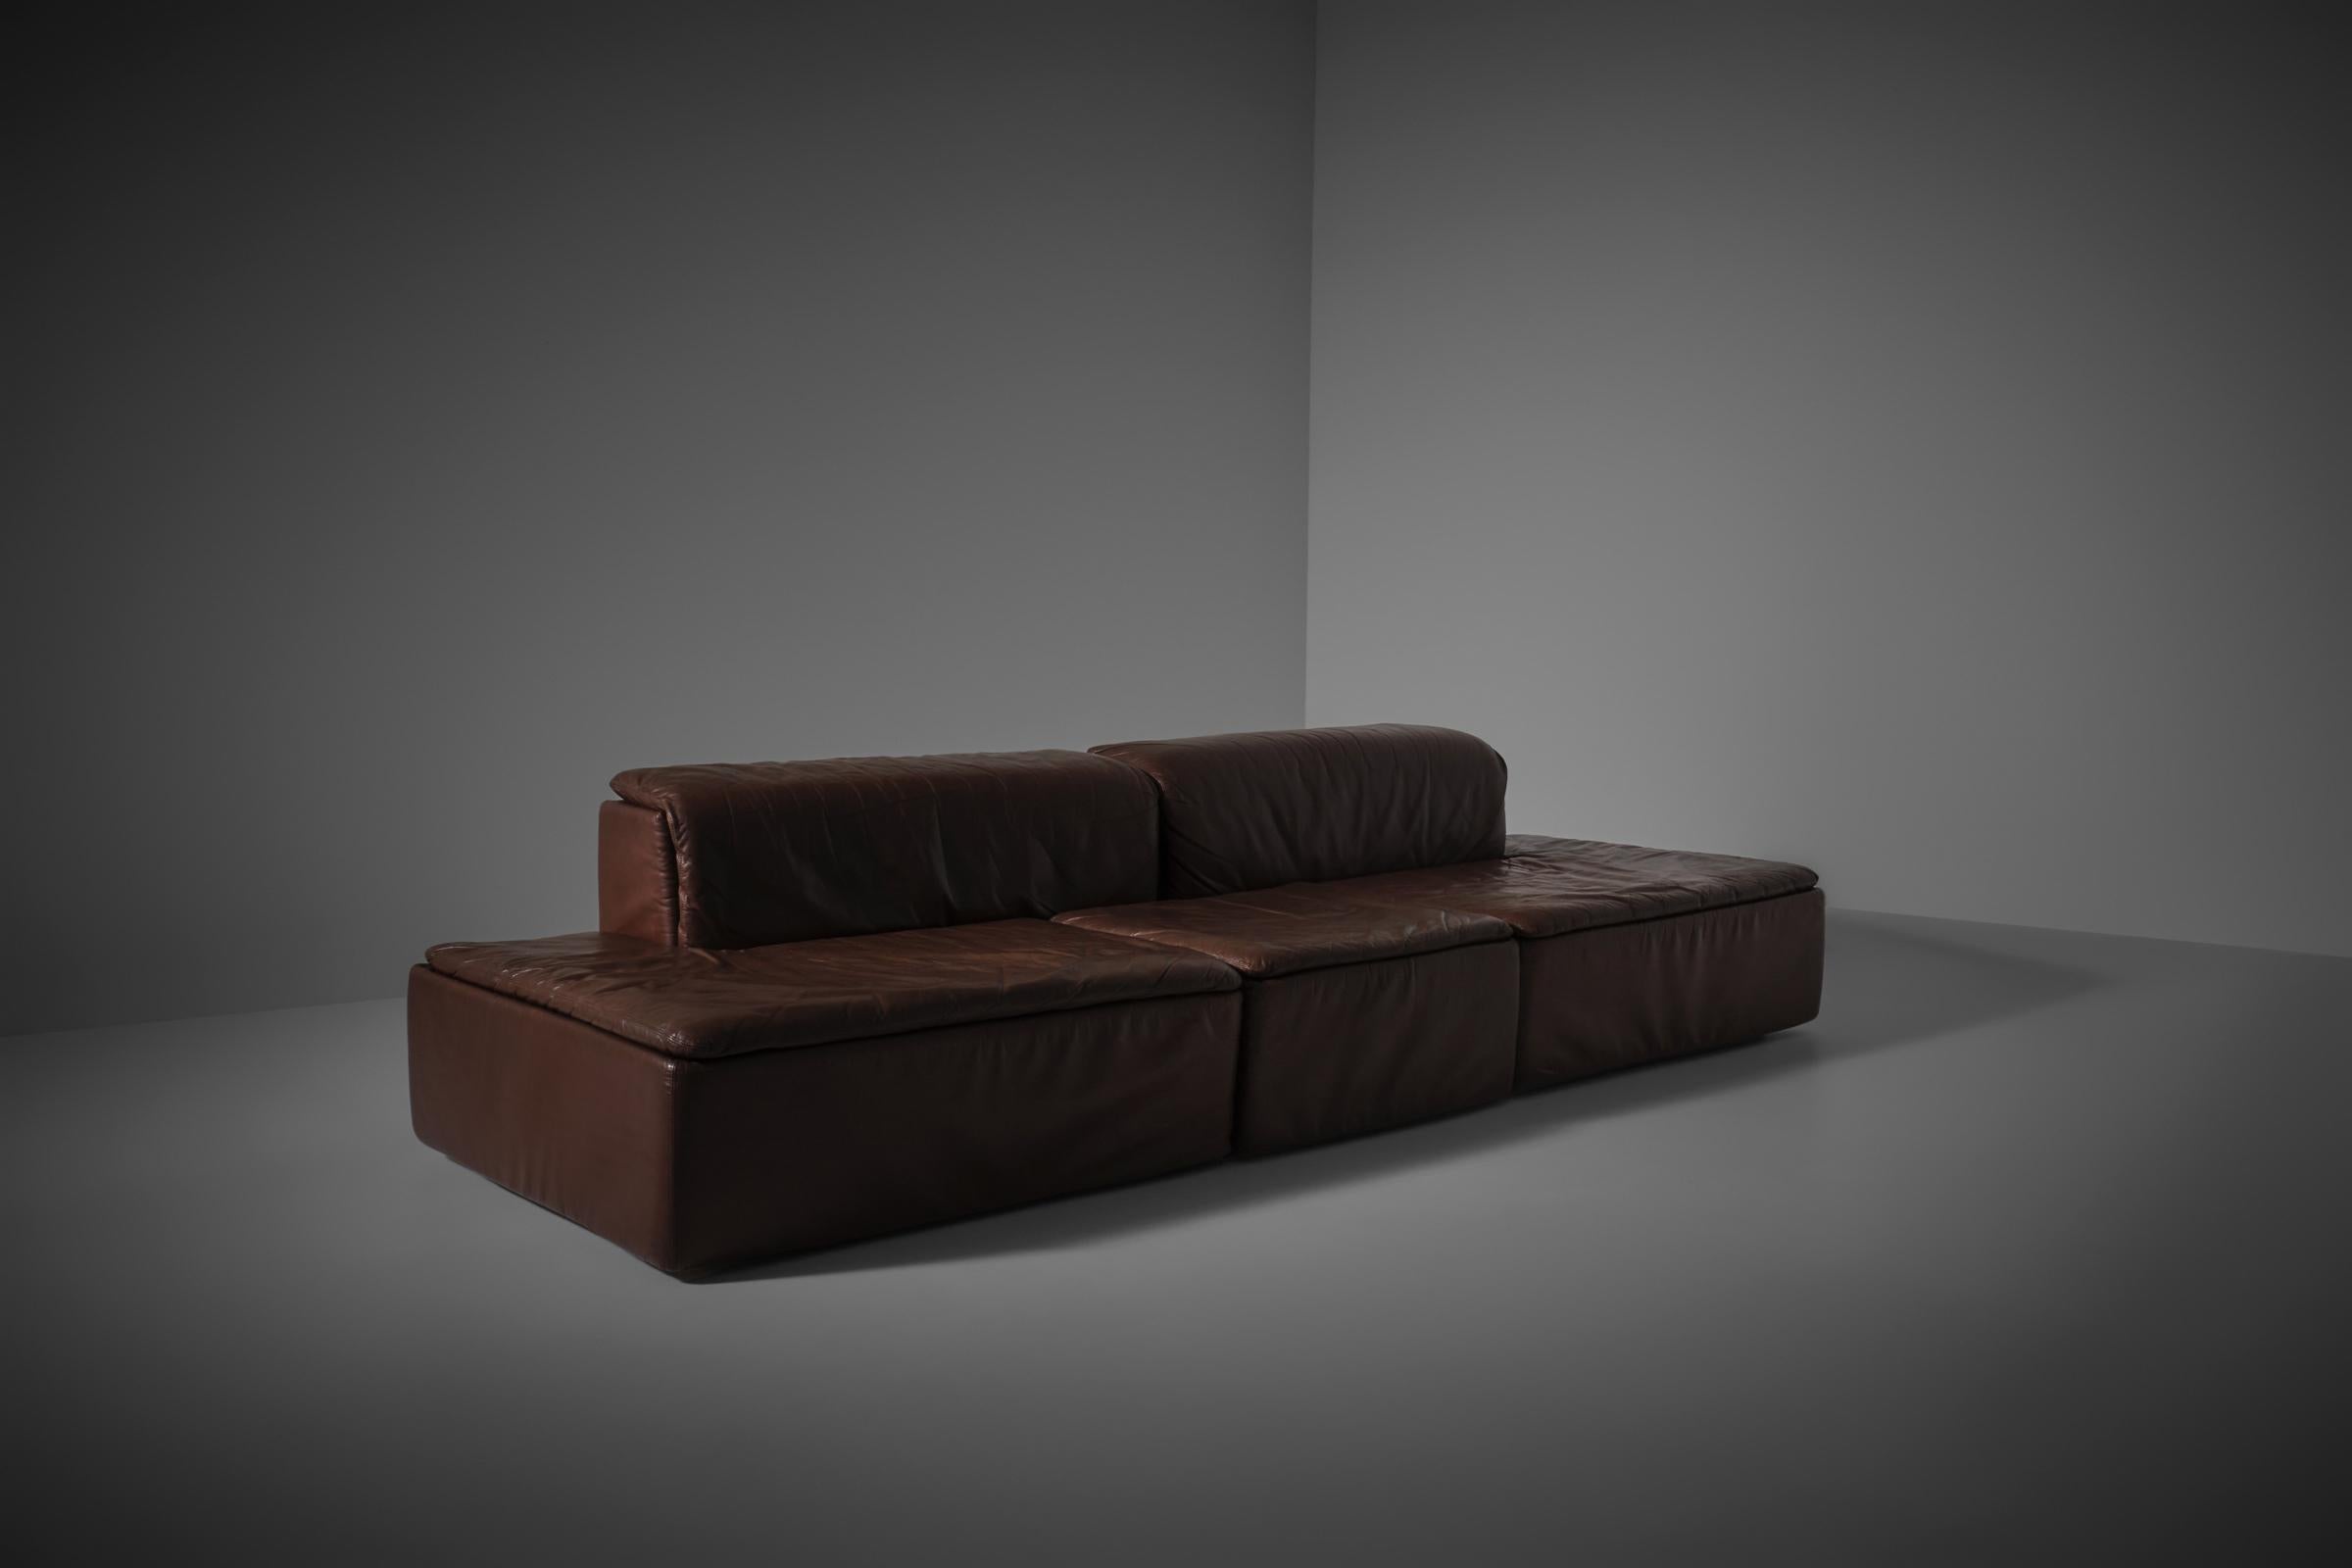 Modulares Sofa 'Paione' von Claudio Salocchi für Sormani, Italien 1968. Interessantes architektonisches Sofa mit einer schönen niedrigen und tiefen Sitzfläche, bestehend aus zwei großen Sitzteilen mit Rückenlehne und einem inneren Element, das als